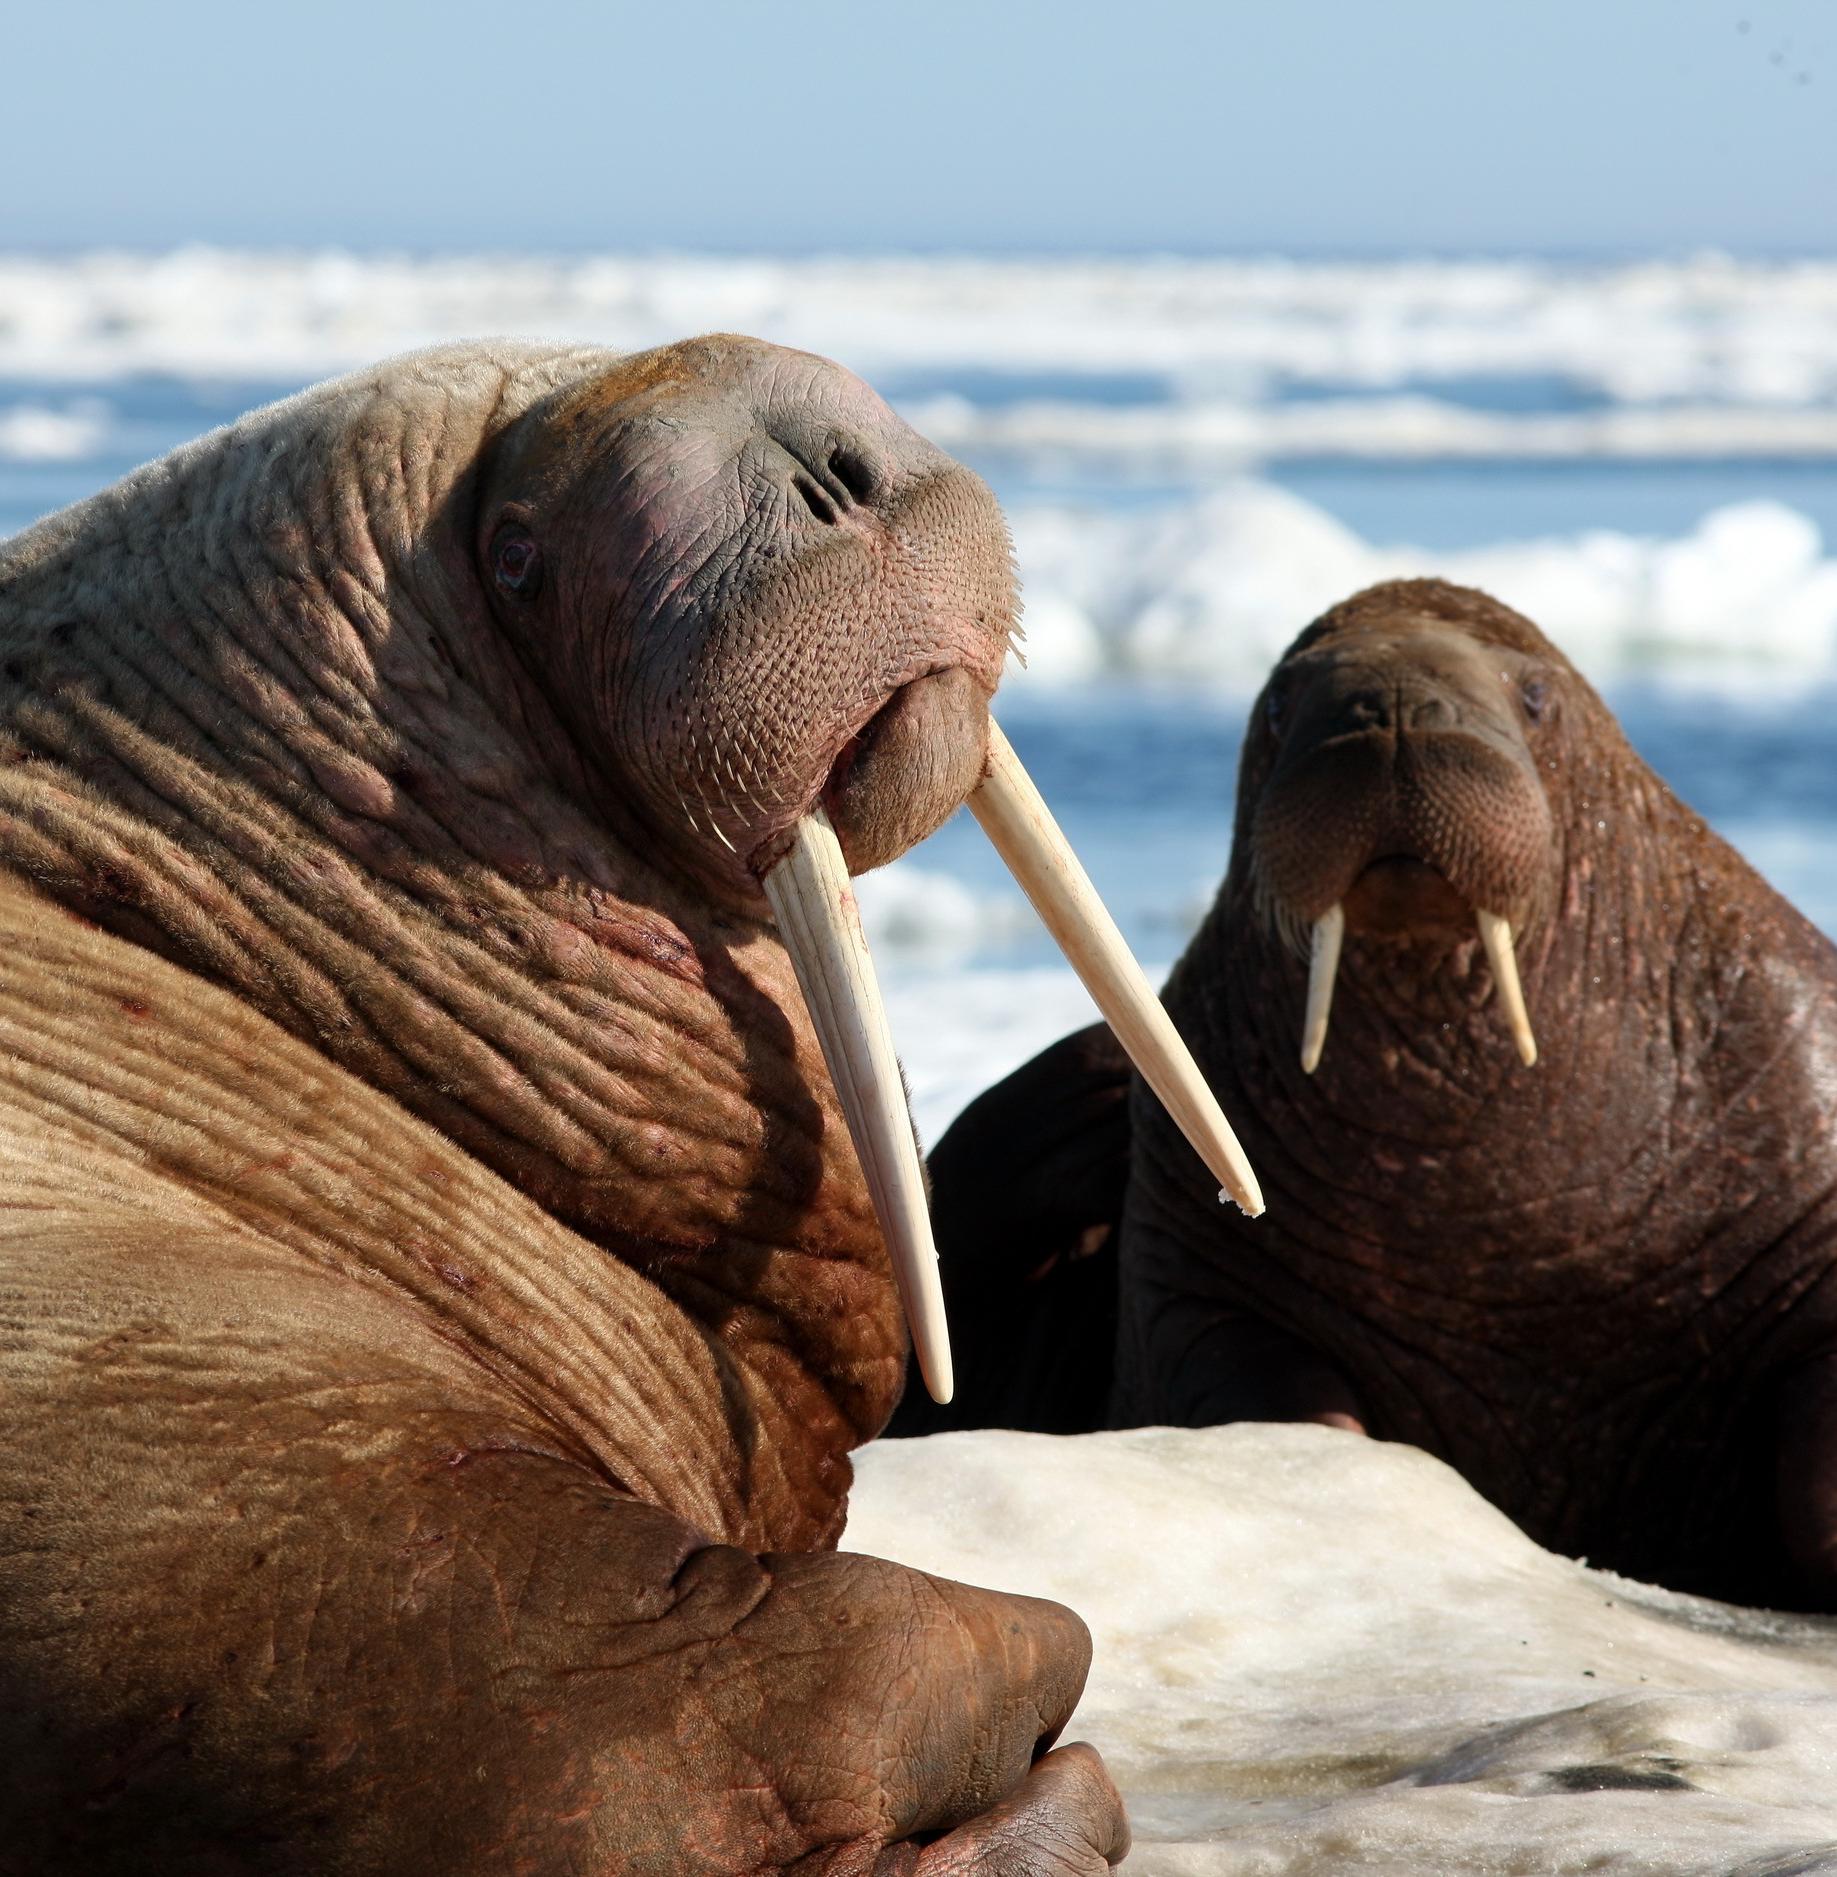  Тихоокеанского моржа внесут в Красную книгу Камчатки 